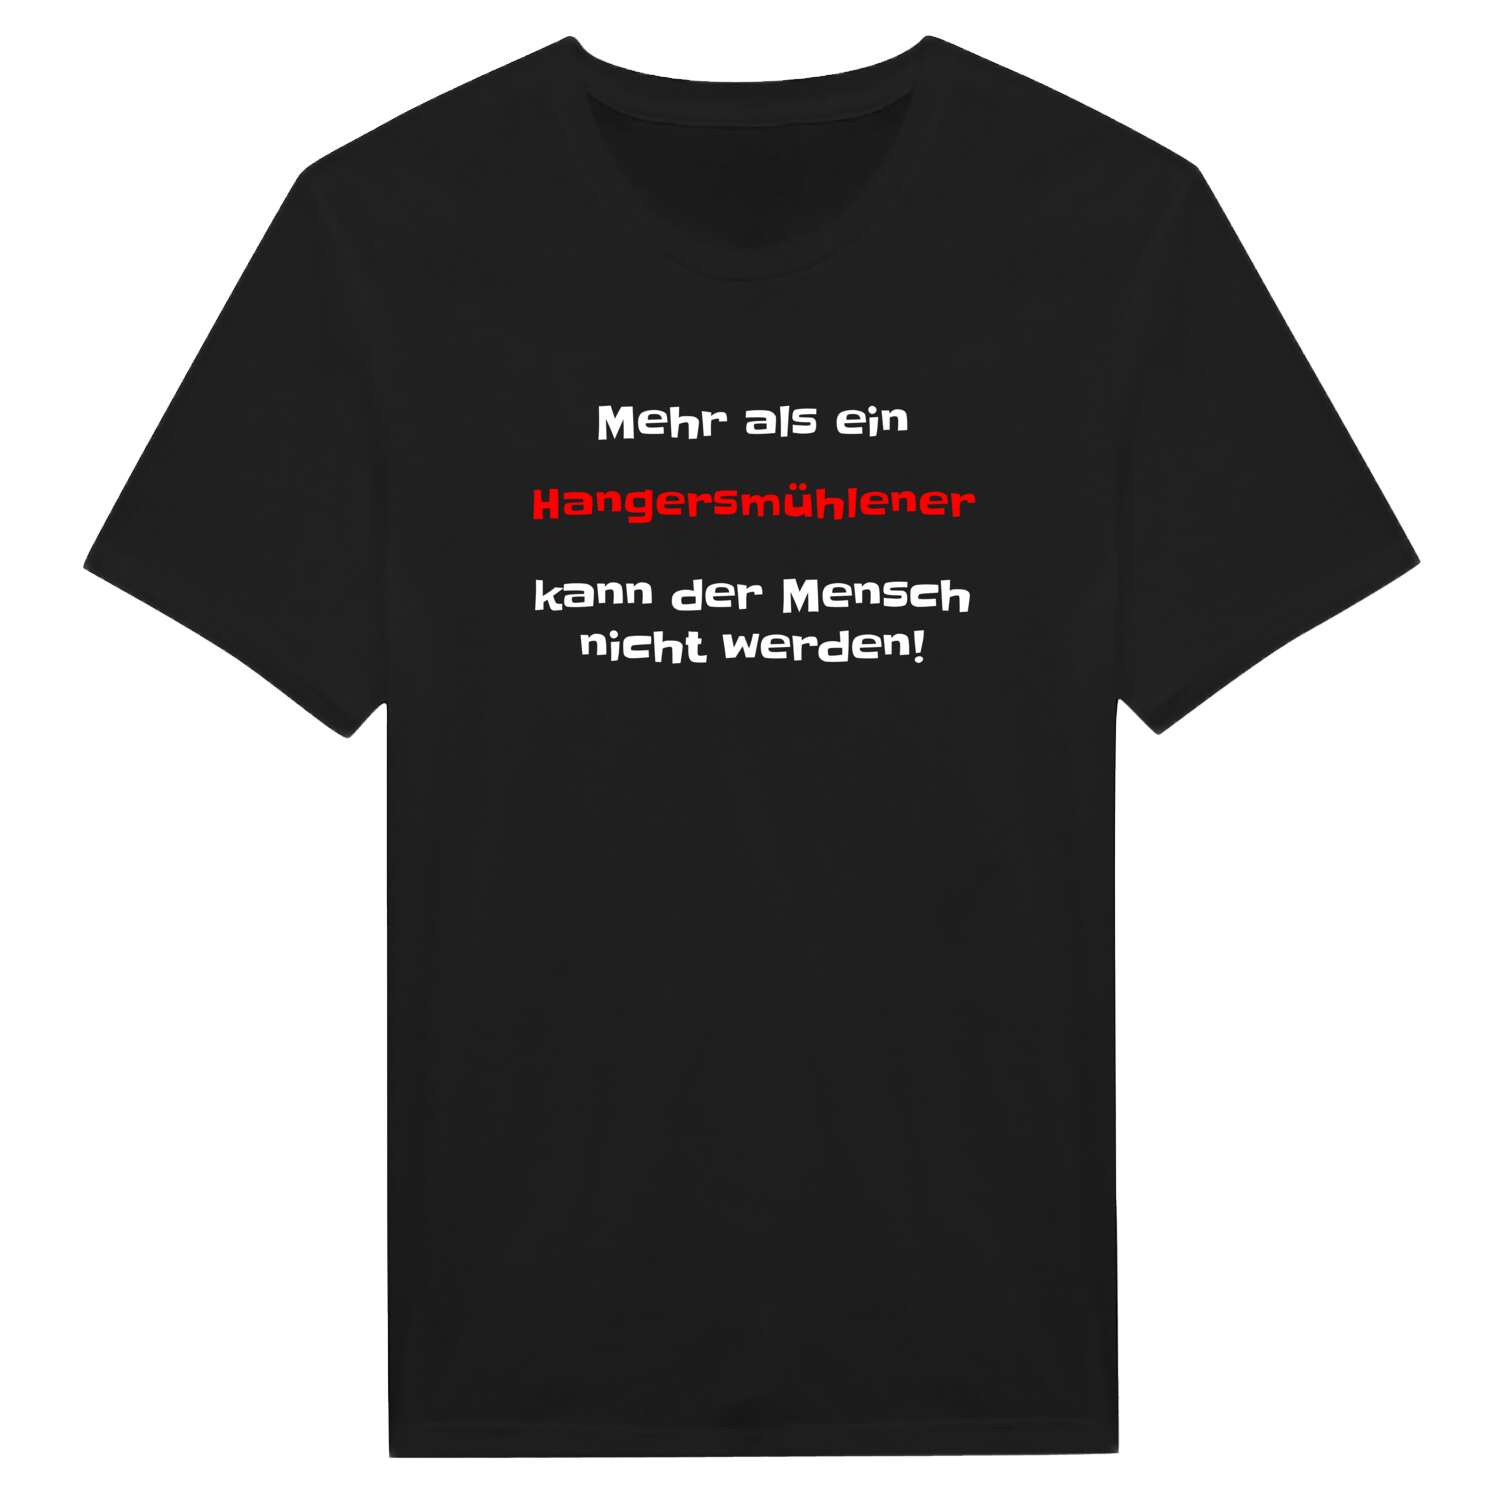 Hangersmühle T-Shirt »Mehr als ein«